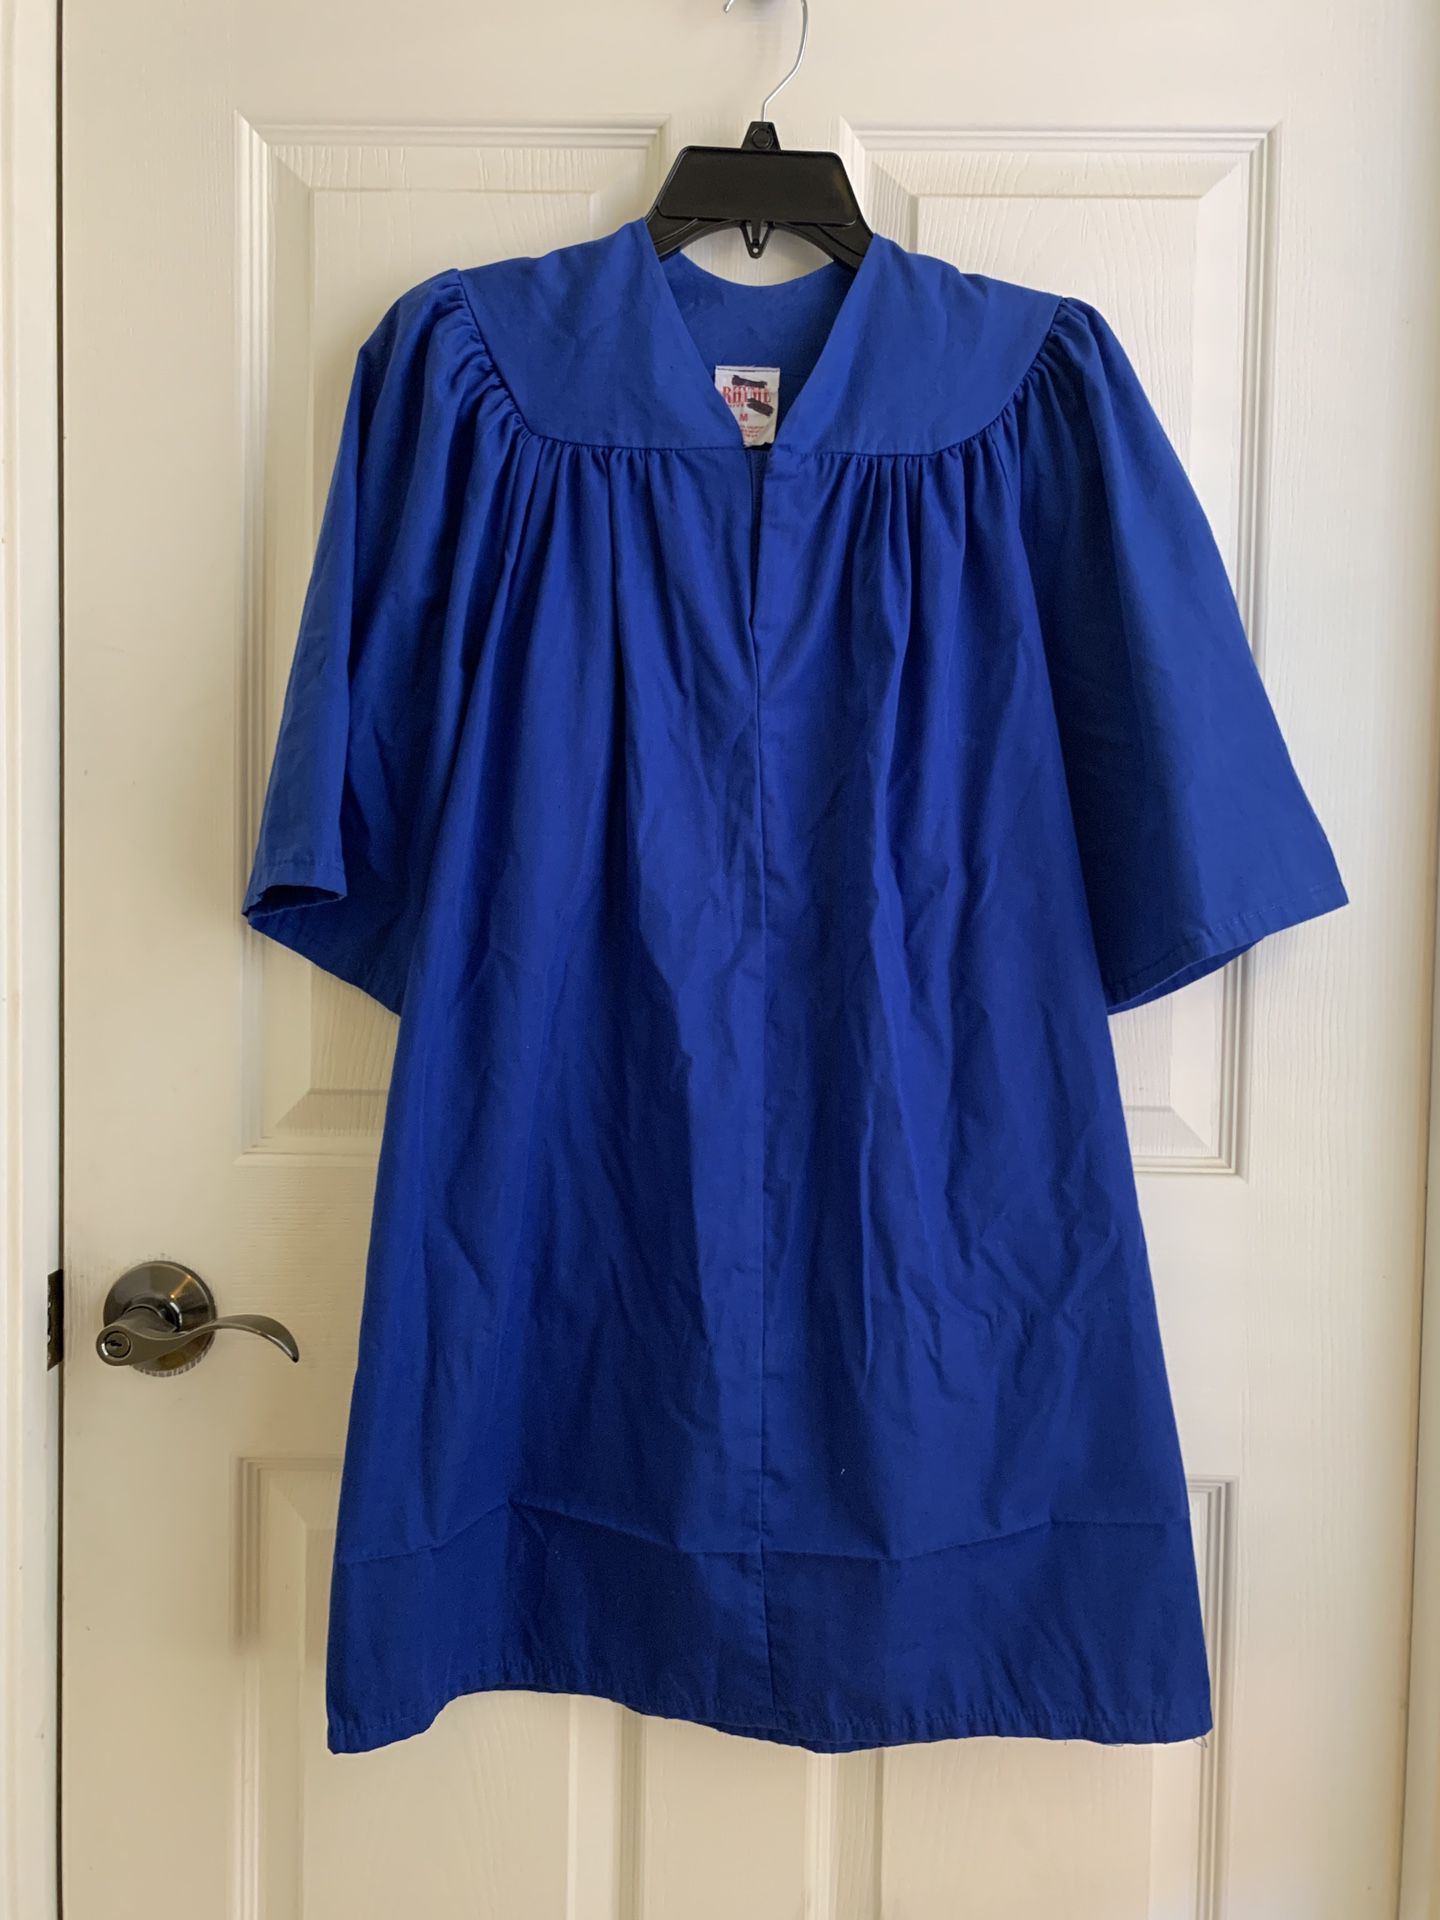 Royal Blue Graduation Gown Size 4’2”-4’5